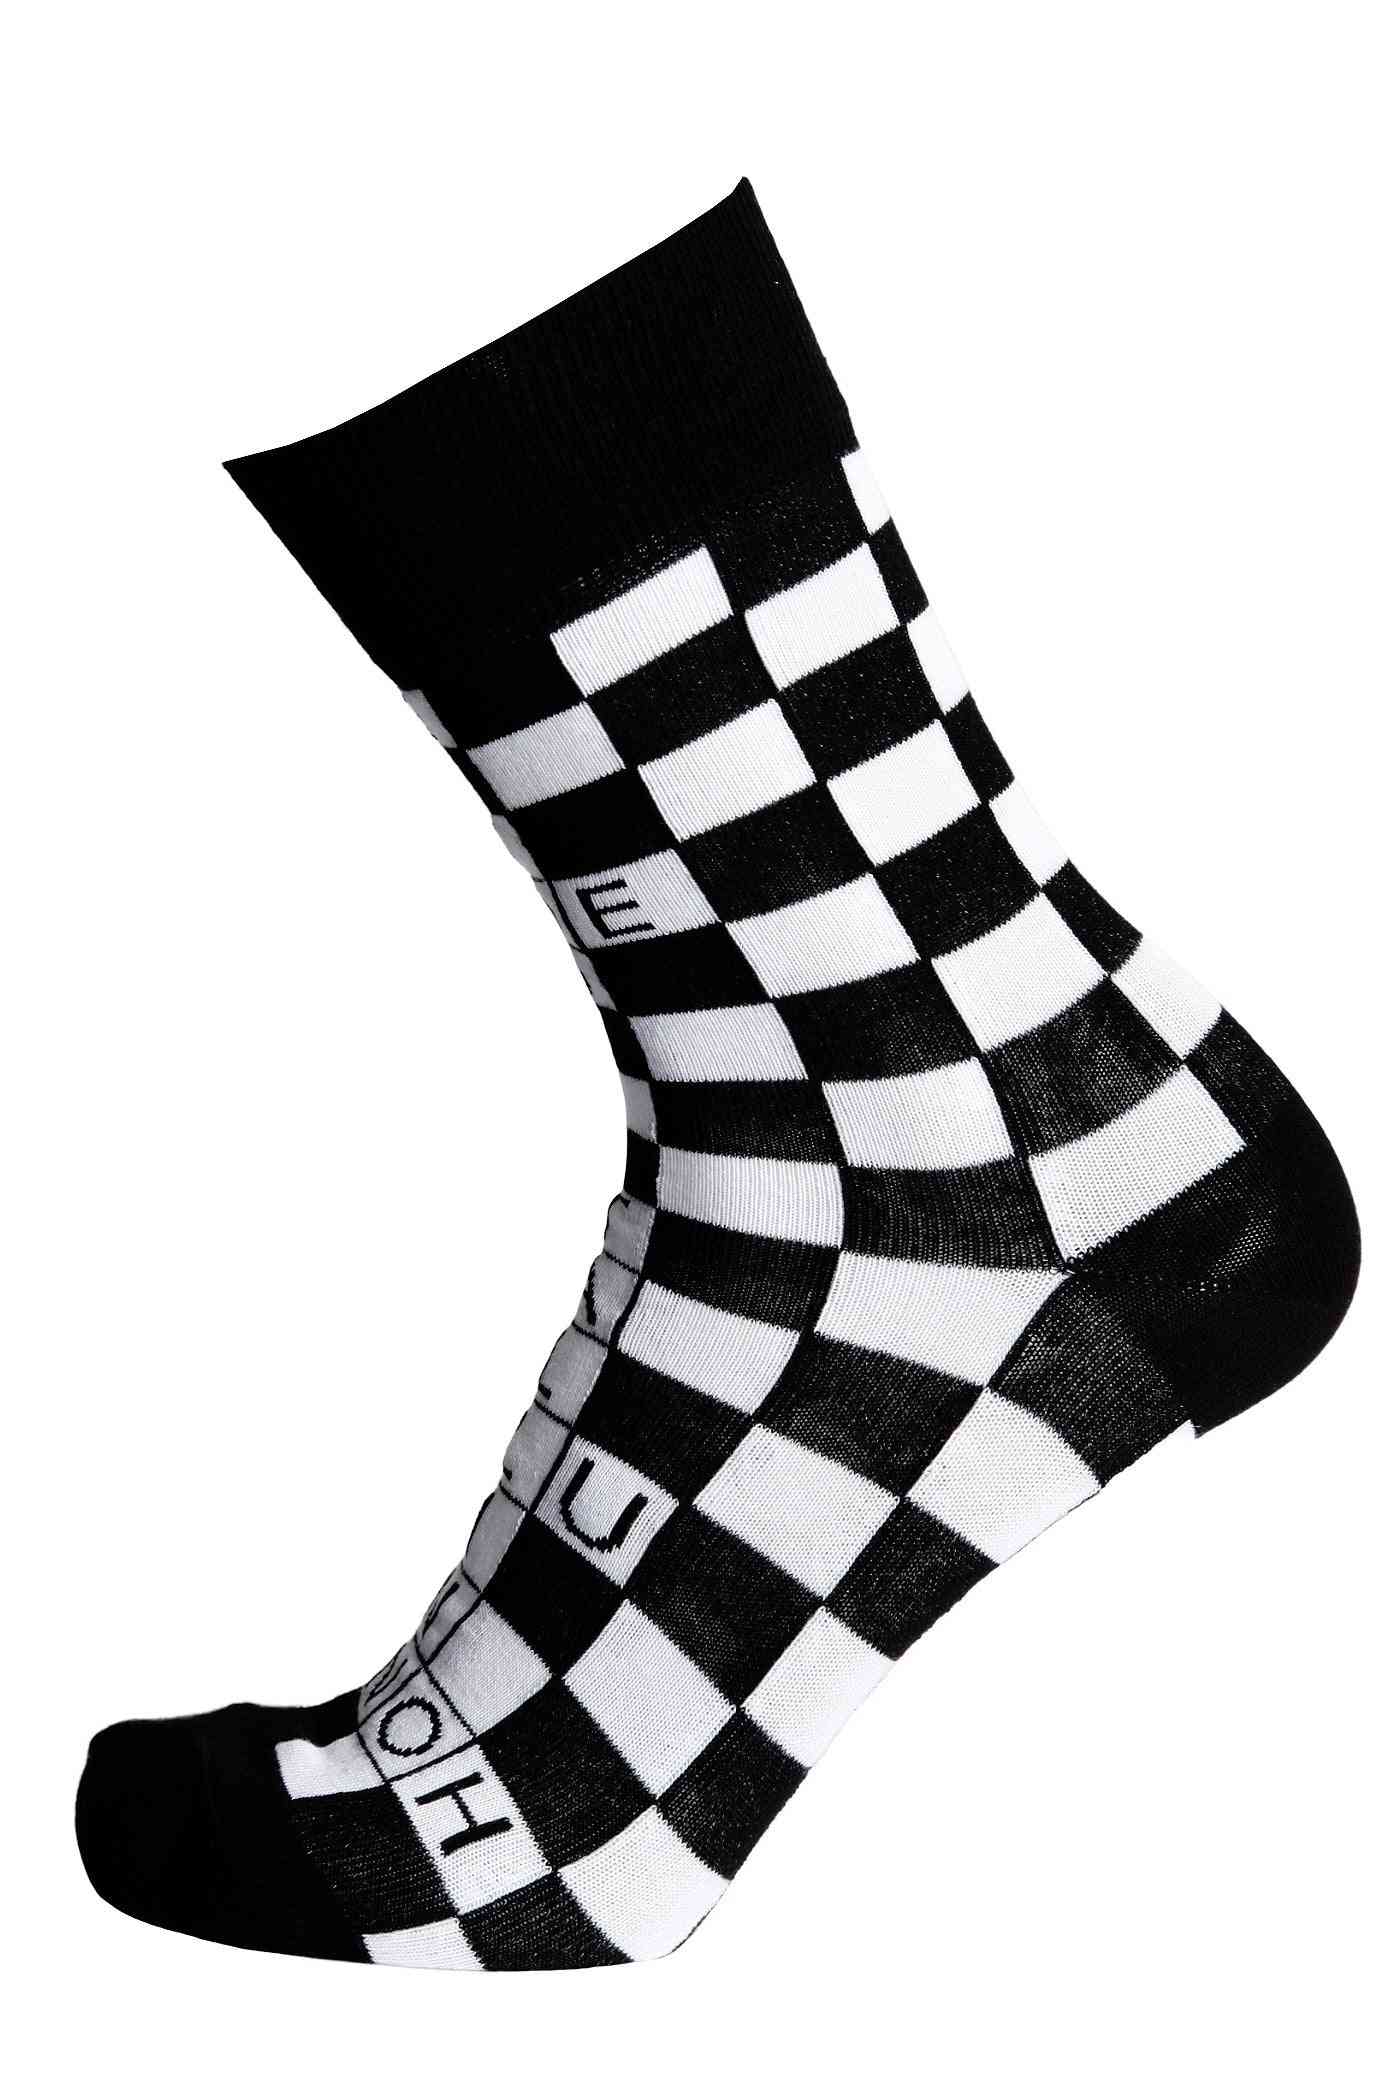 Krydsord design smukke sokker